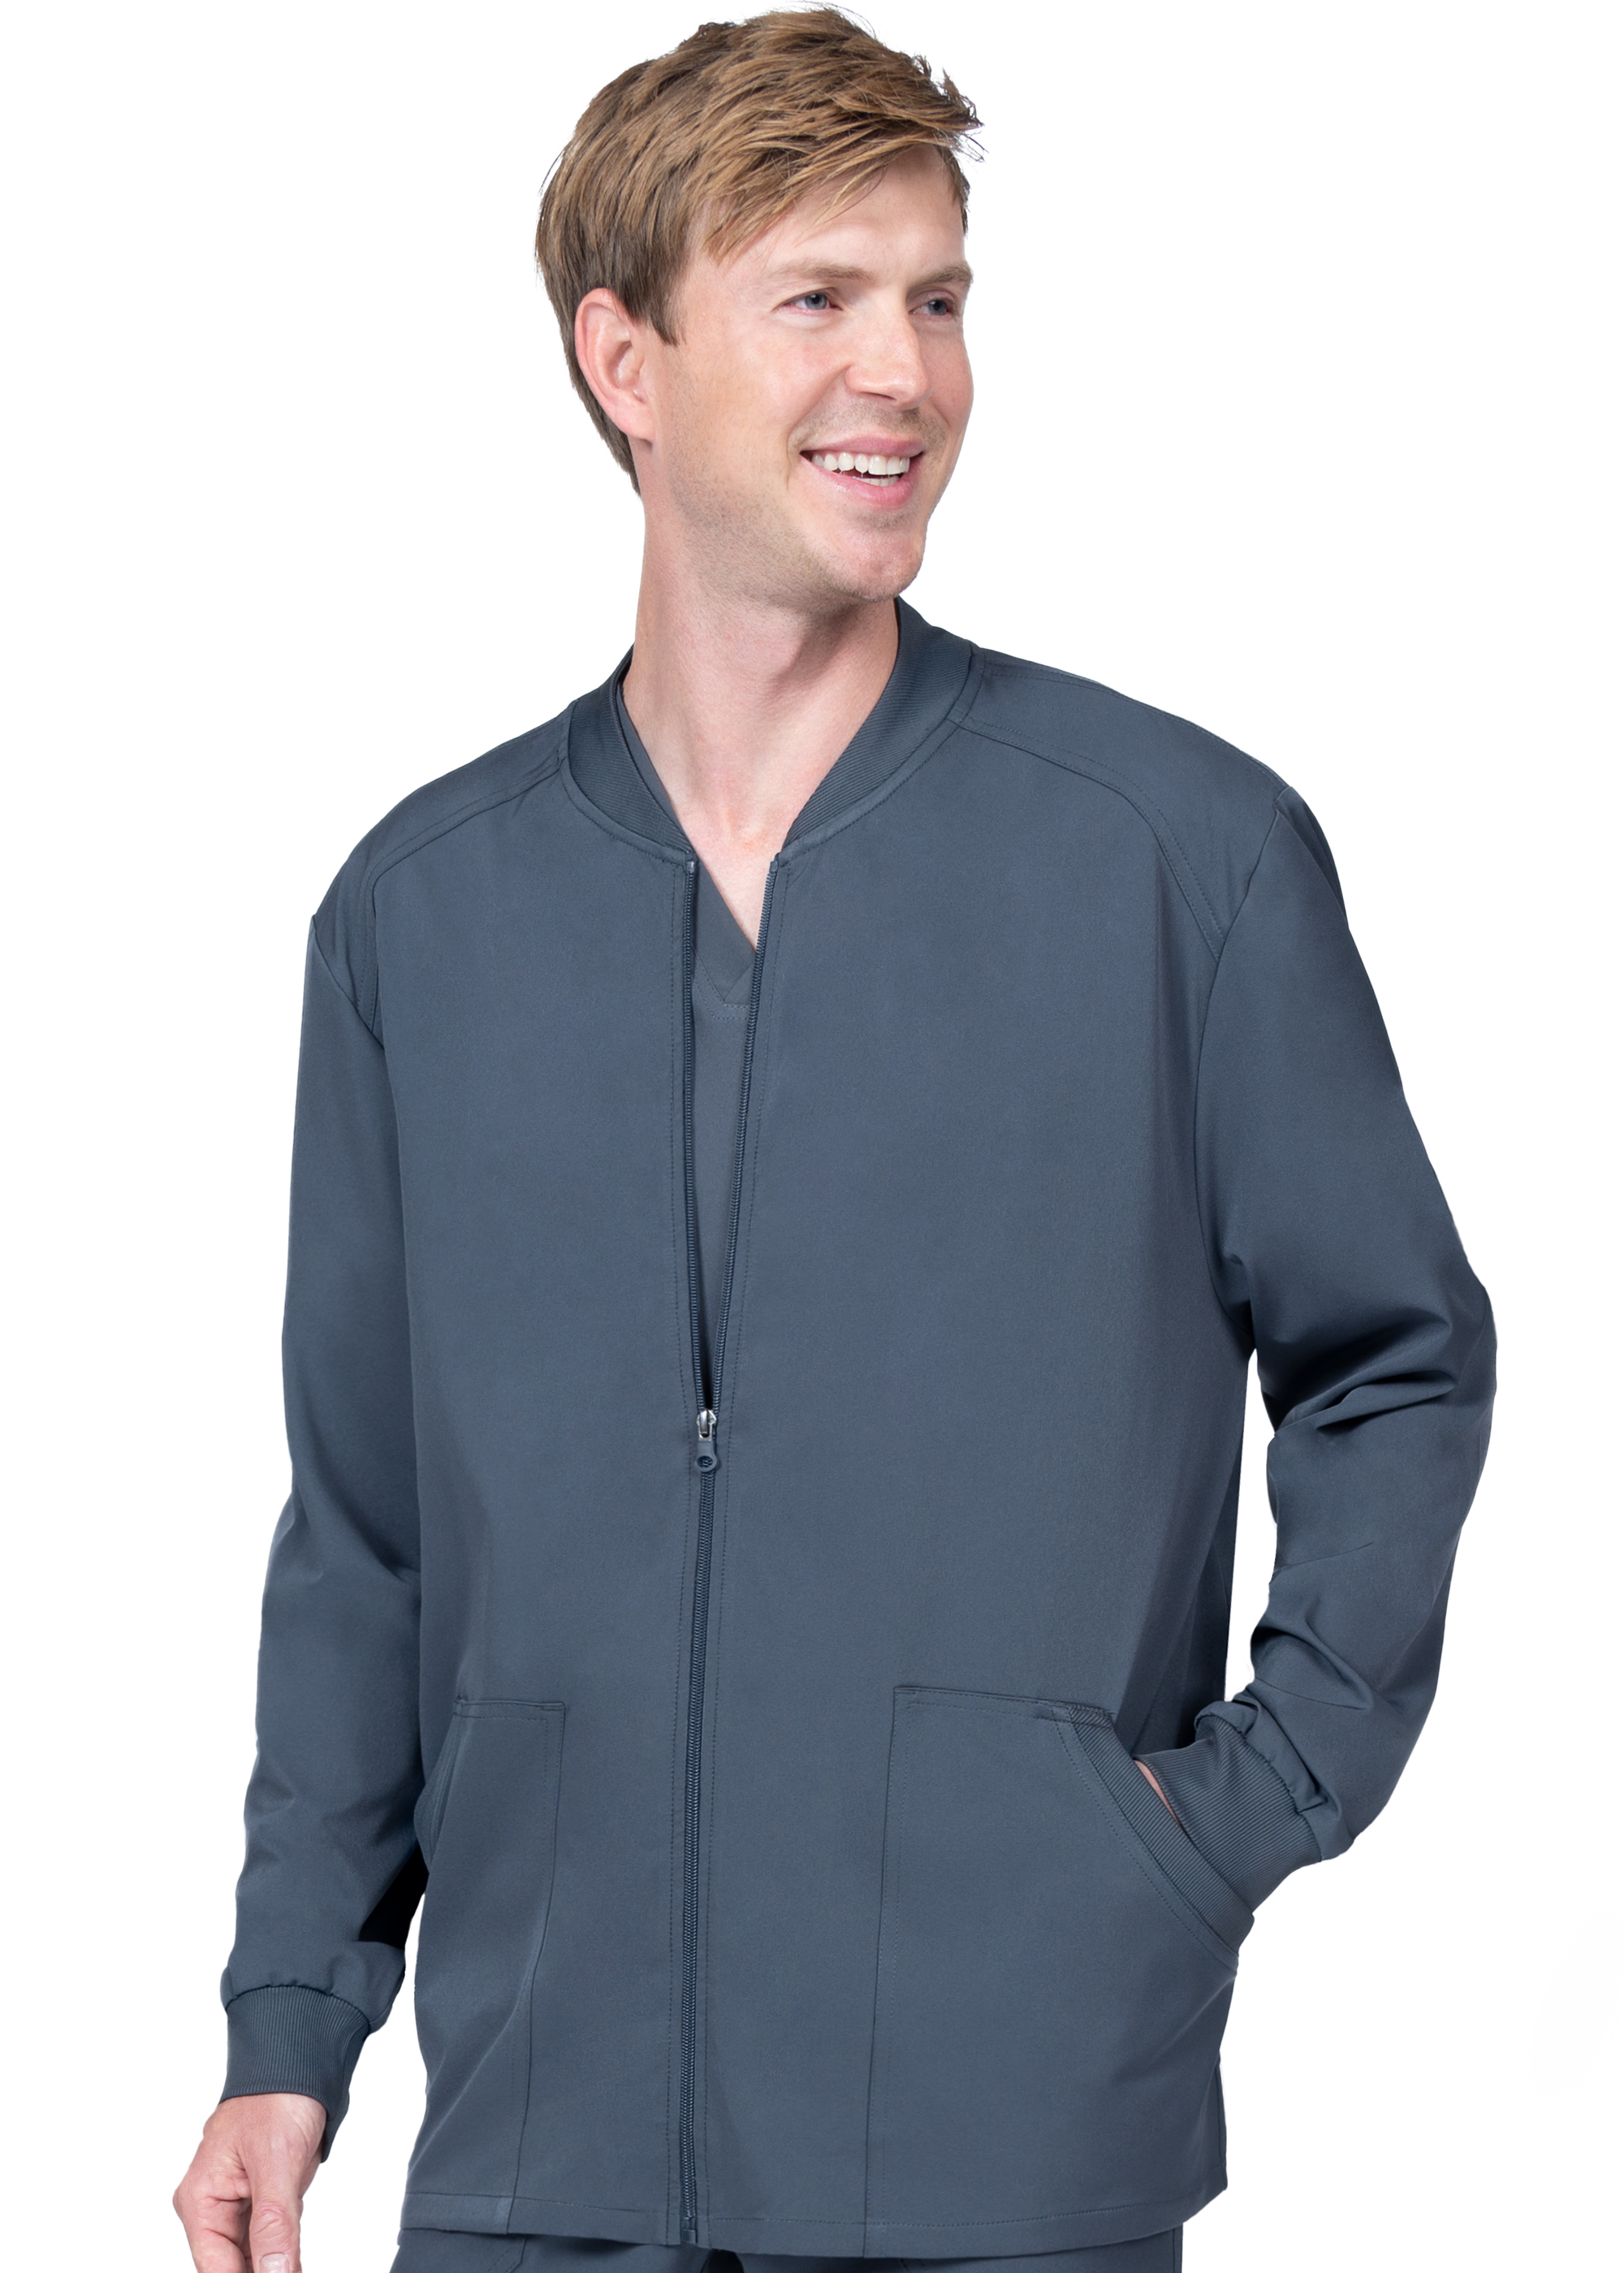 Buy/Shop Men's Jackets – Men's Online in OH – Cincy Scrubs